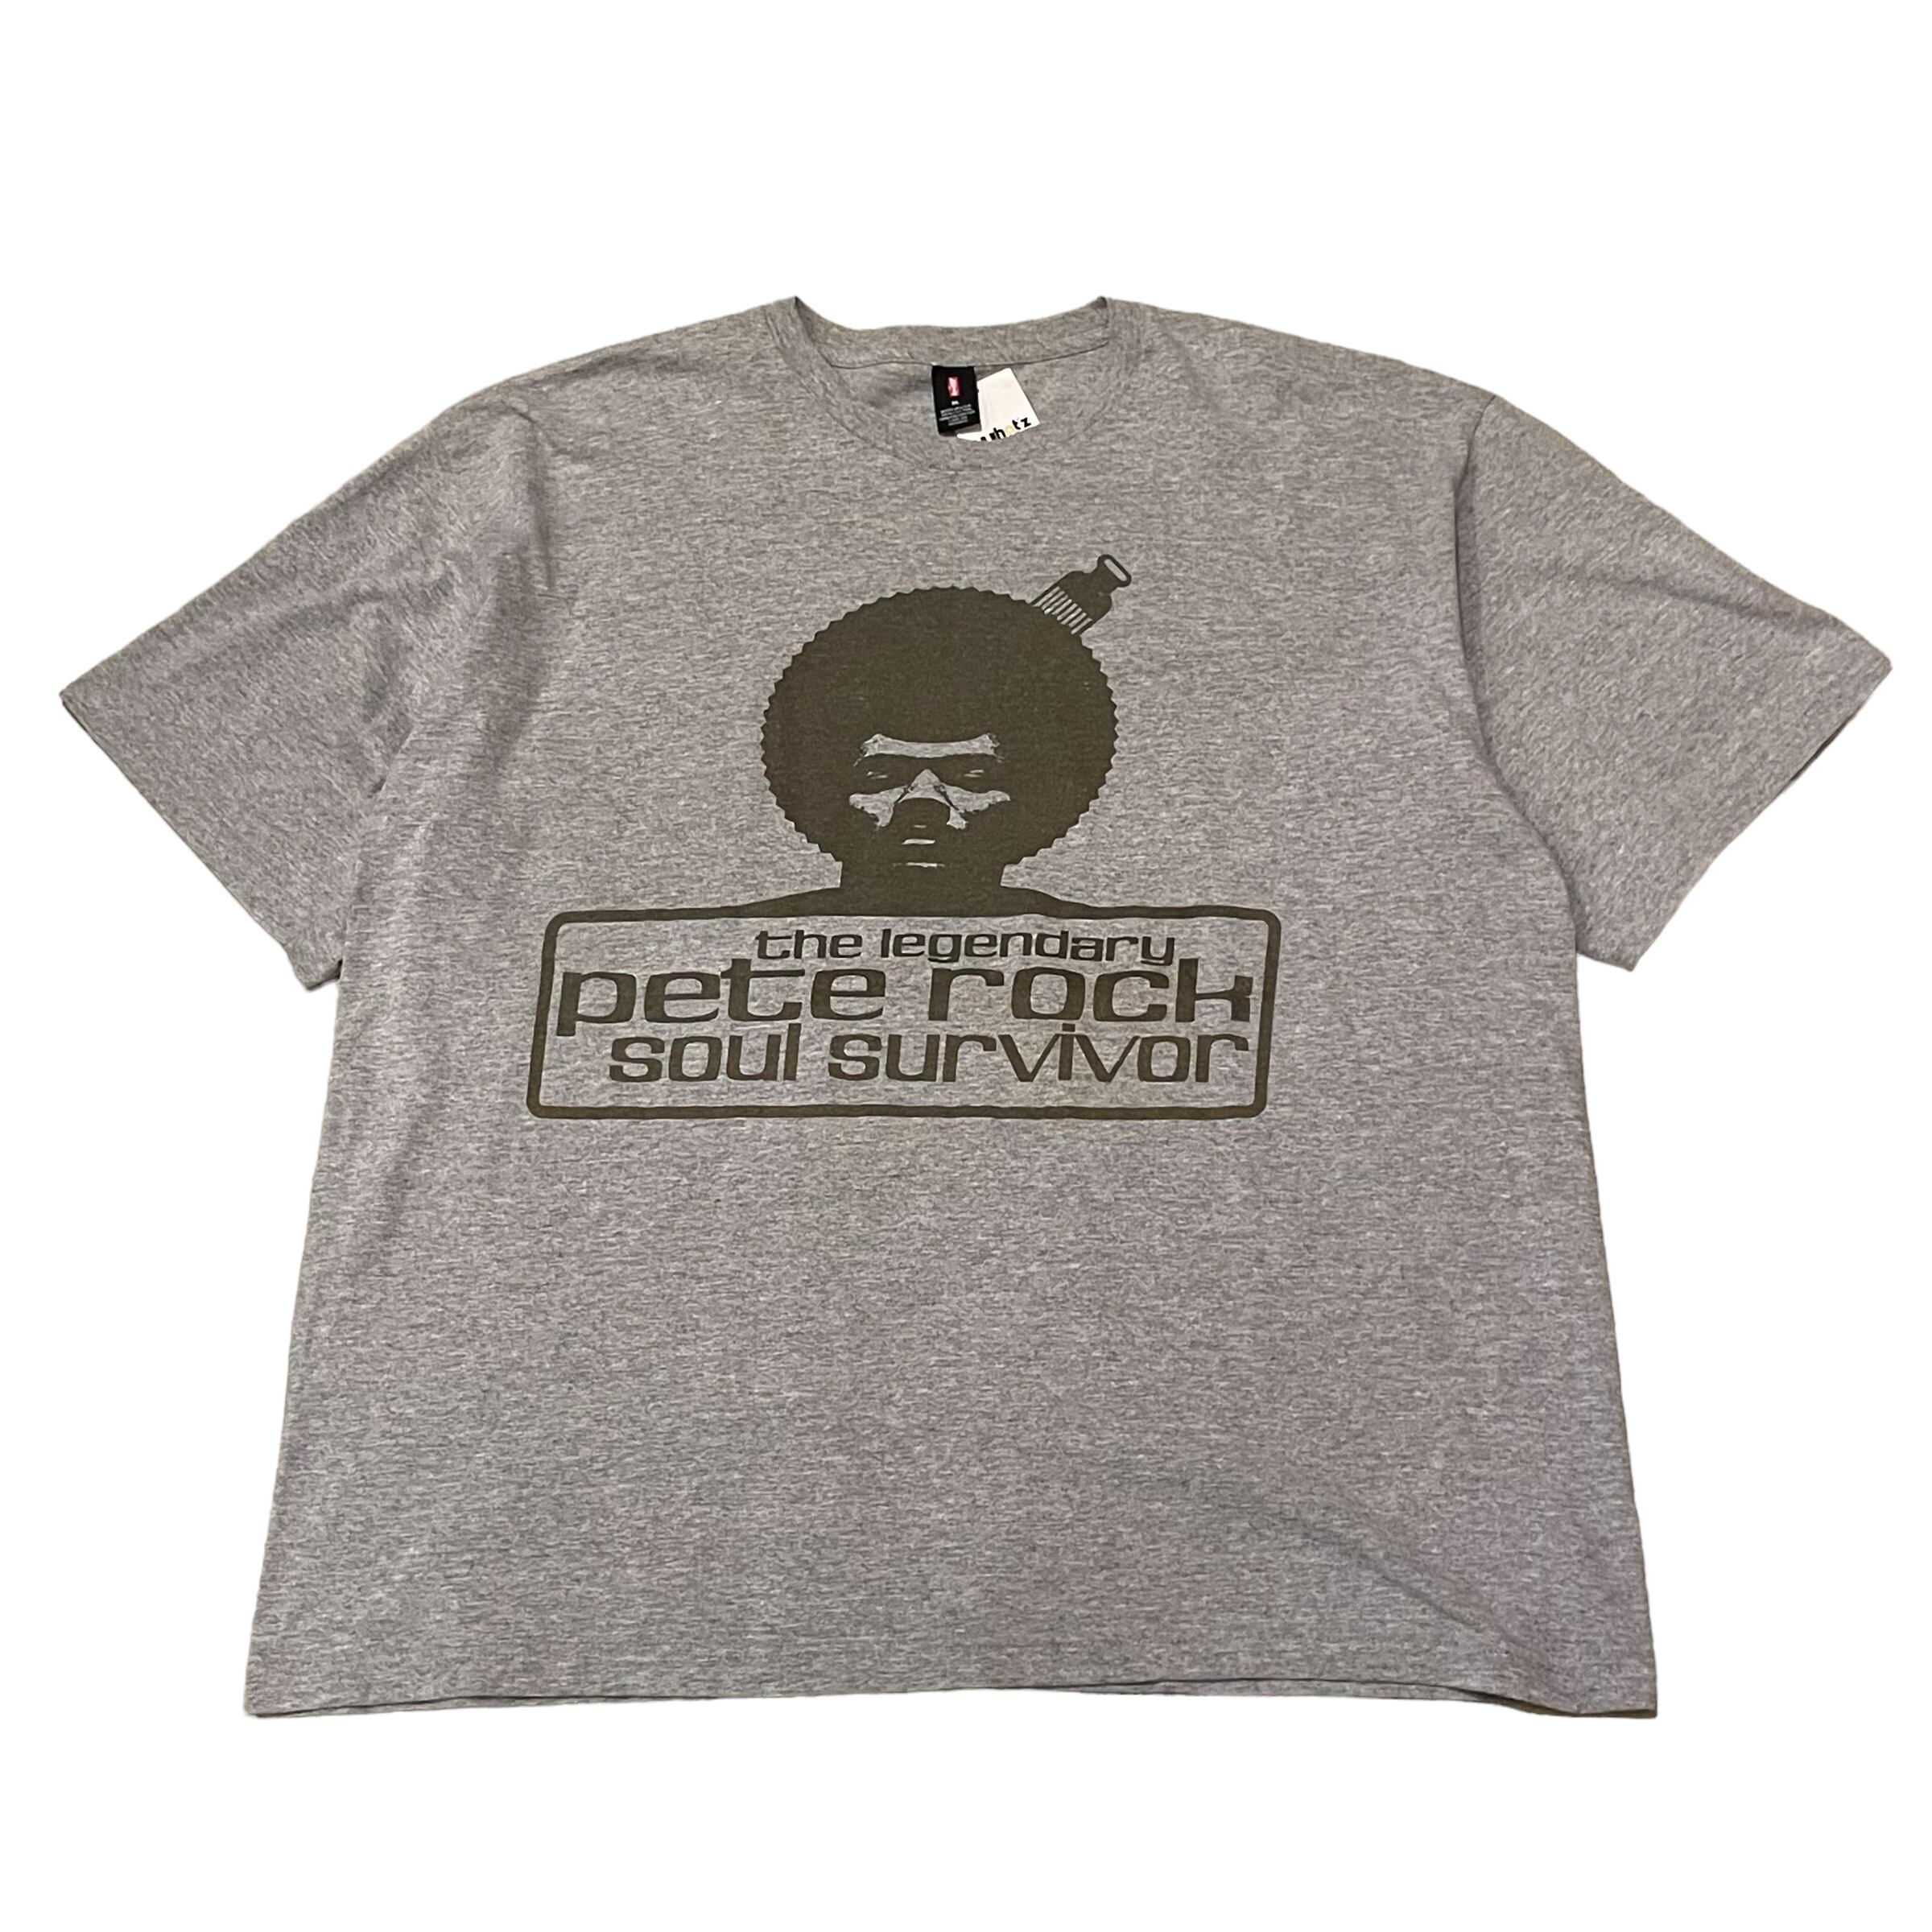 90s Levi's Pete Rock “soul survivor” t-shirt | What’z up powered by BASE